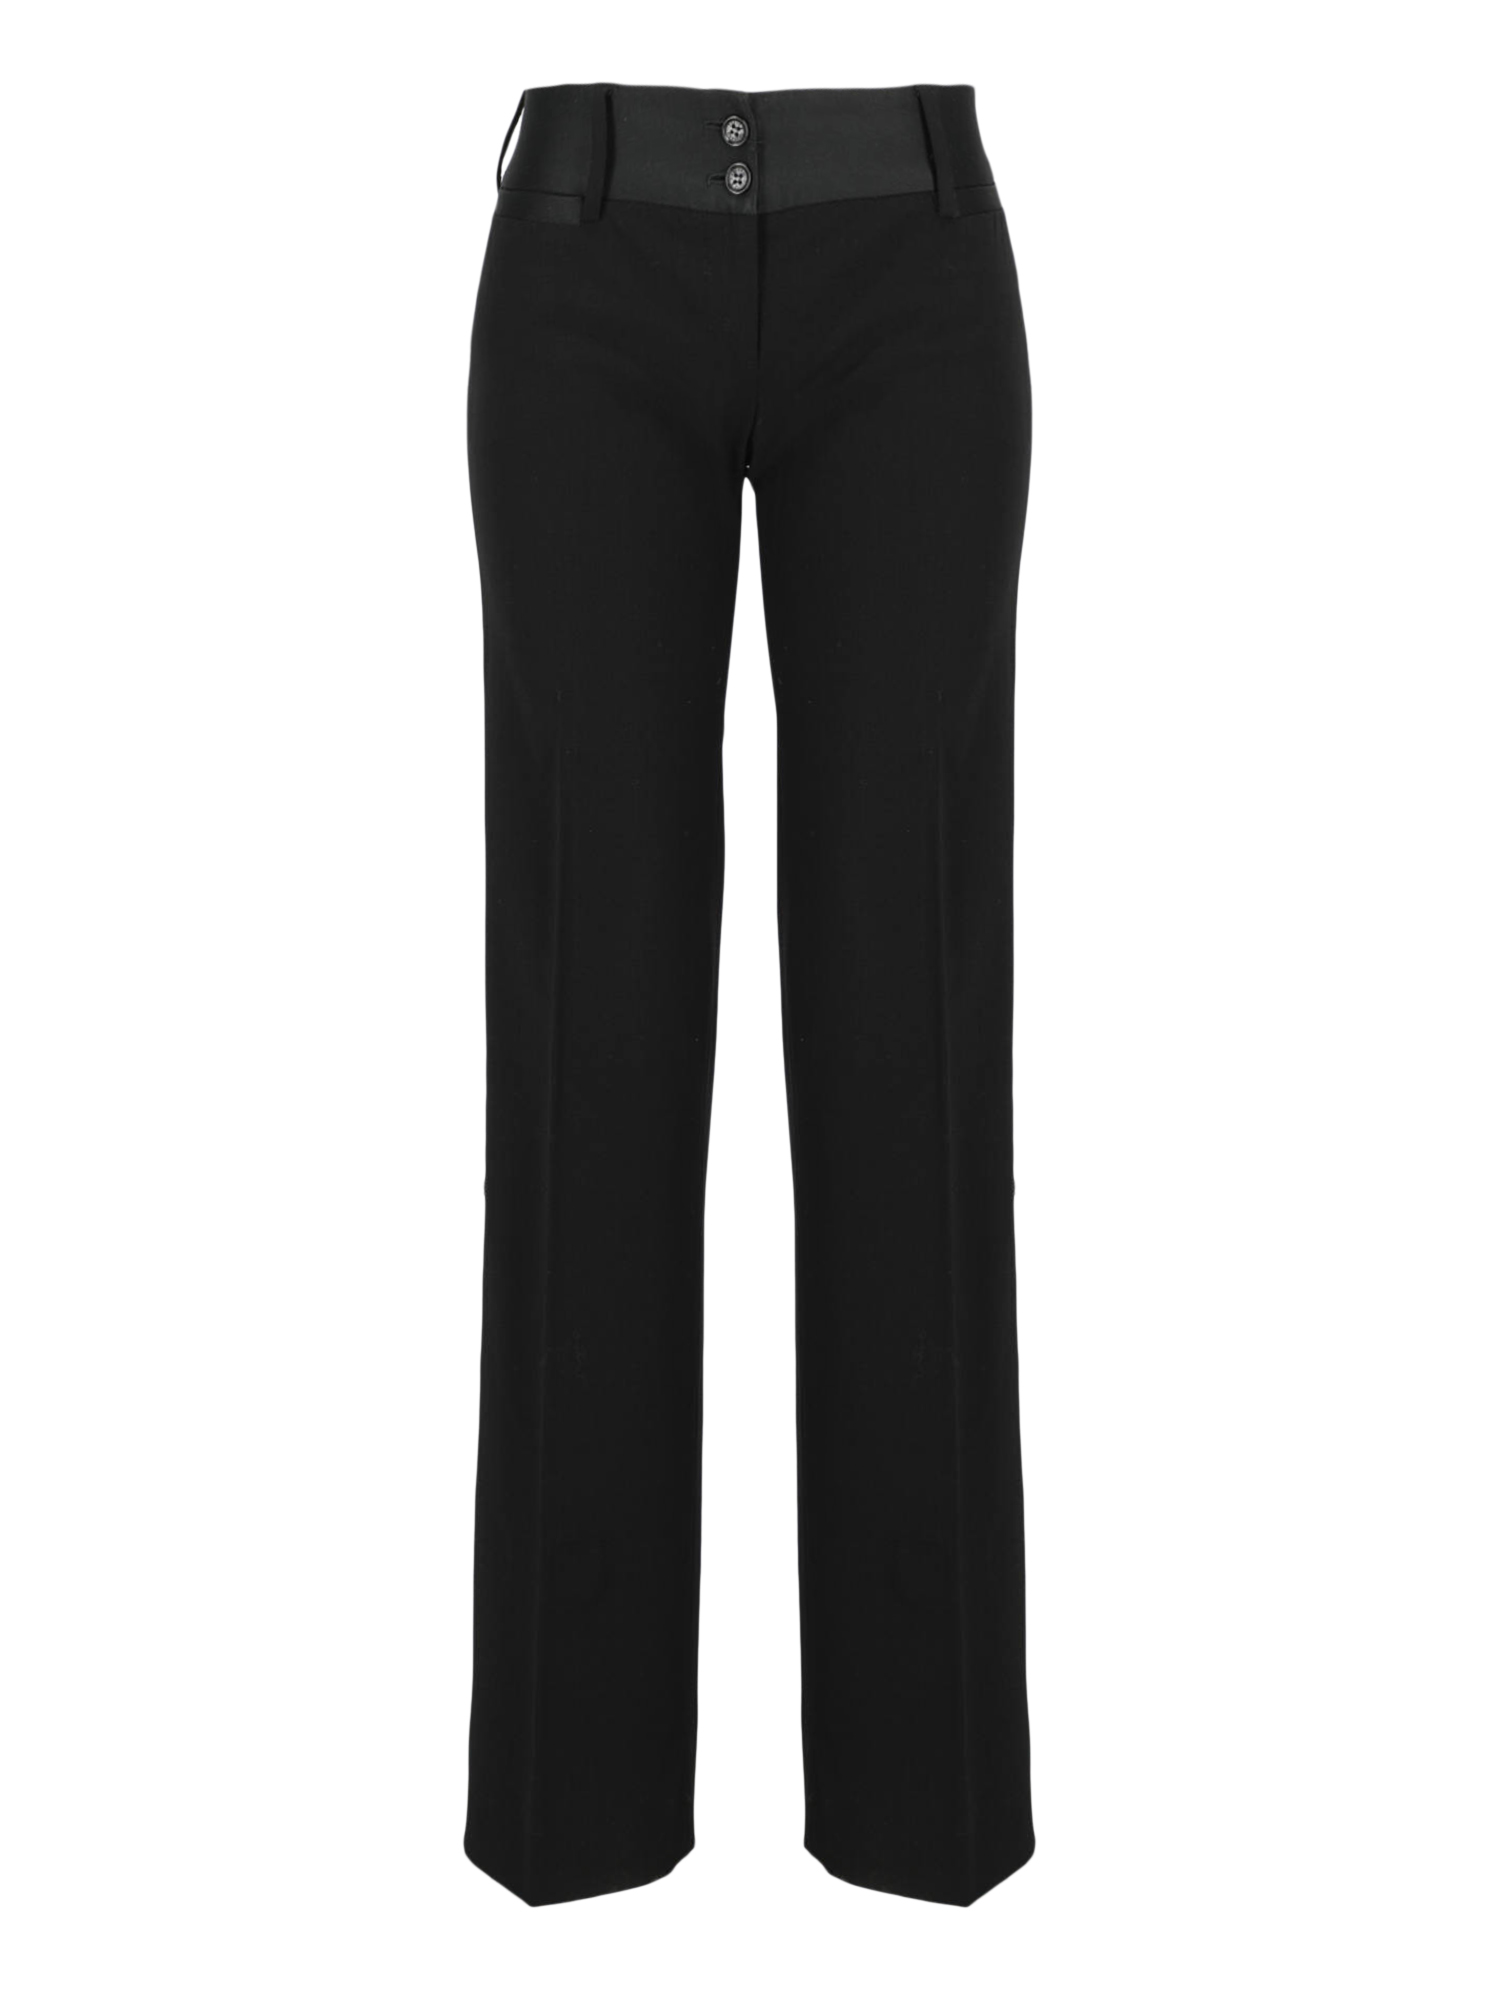 Pre-owned Dolce & Gabbana Women's Trousers -  - In Black Wool